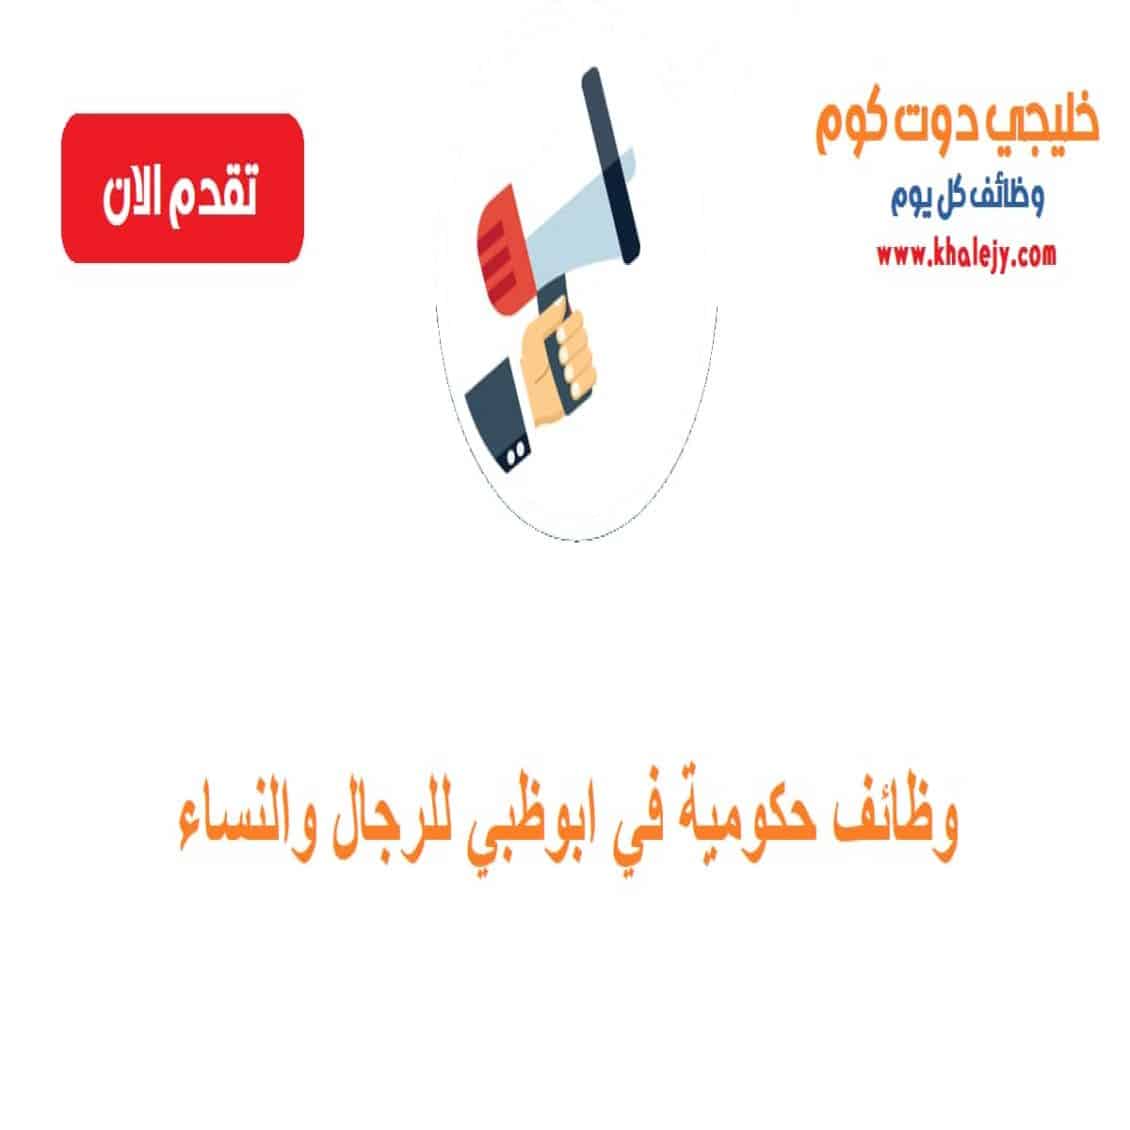 وظائف حكومية في ابوظبي للرجال والنساء